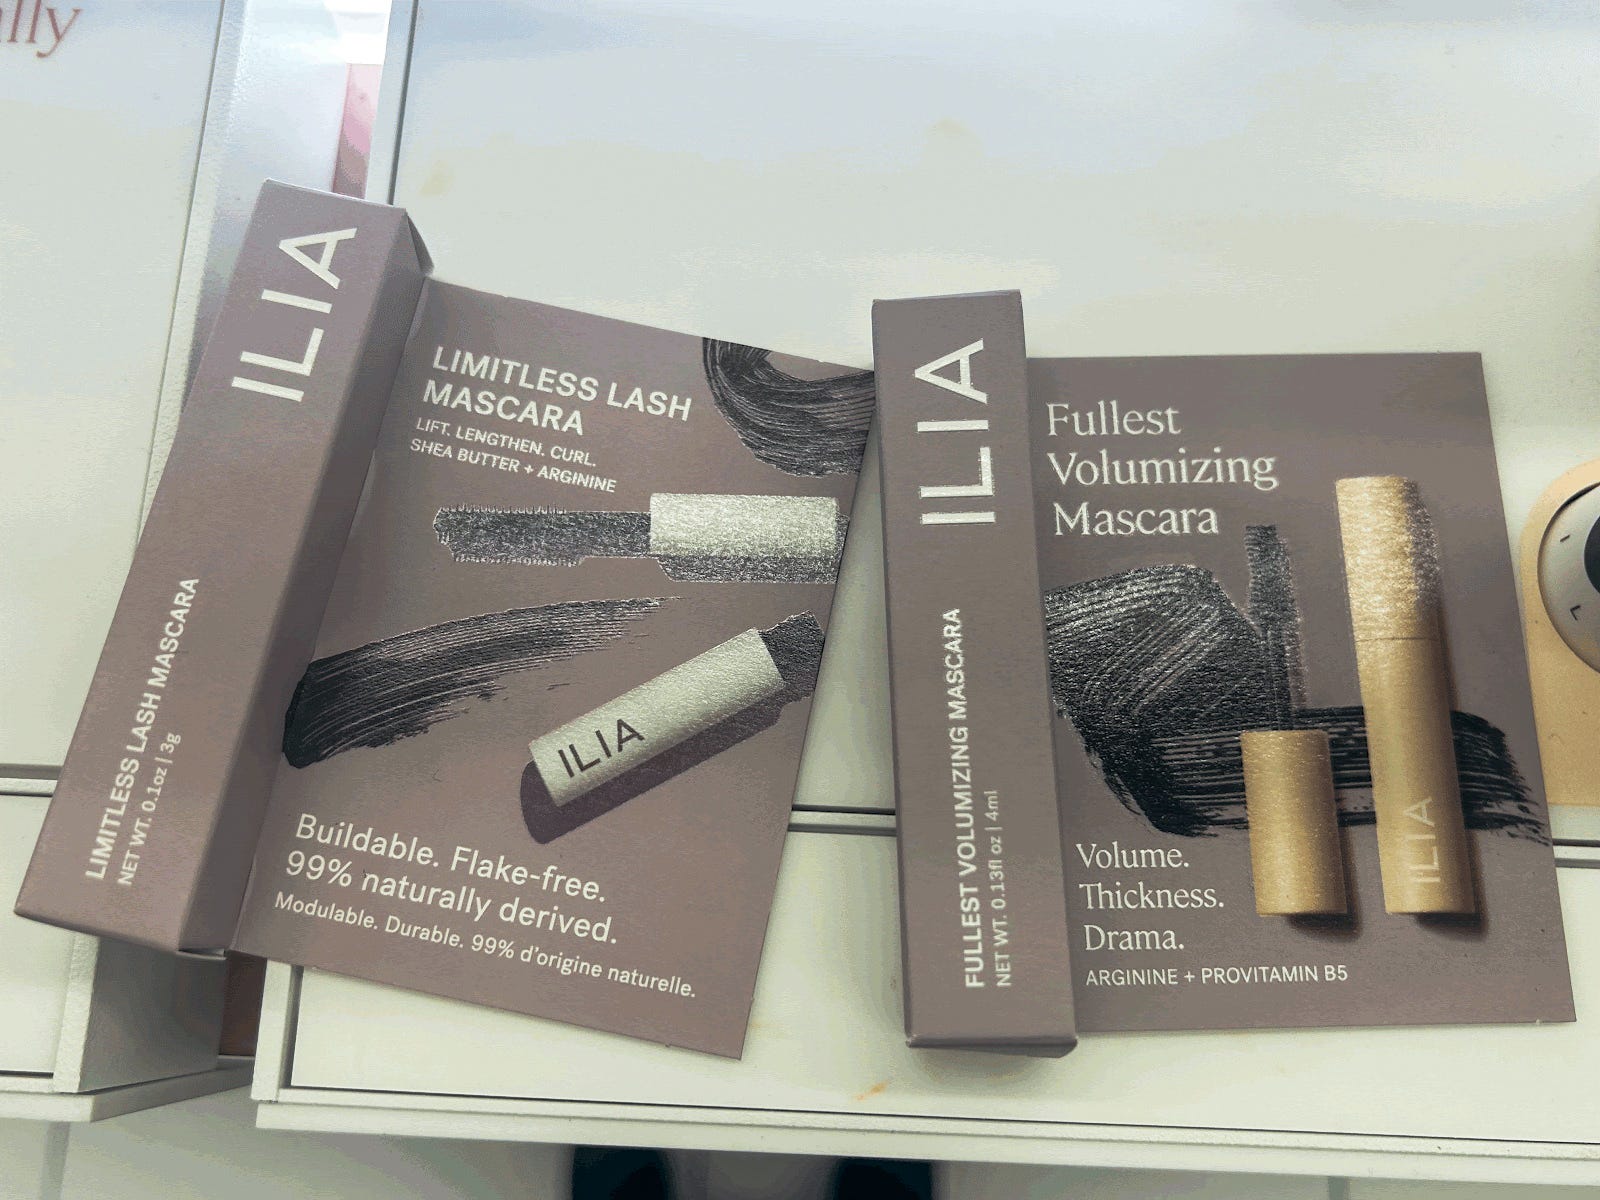 Zwei graue Kartonschachteln mit Ilia-Mascara.  Auf einer Packung steht „Limitless Lash Mascara“ und auf der anderen „Fullest Volumizing Mascara“.